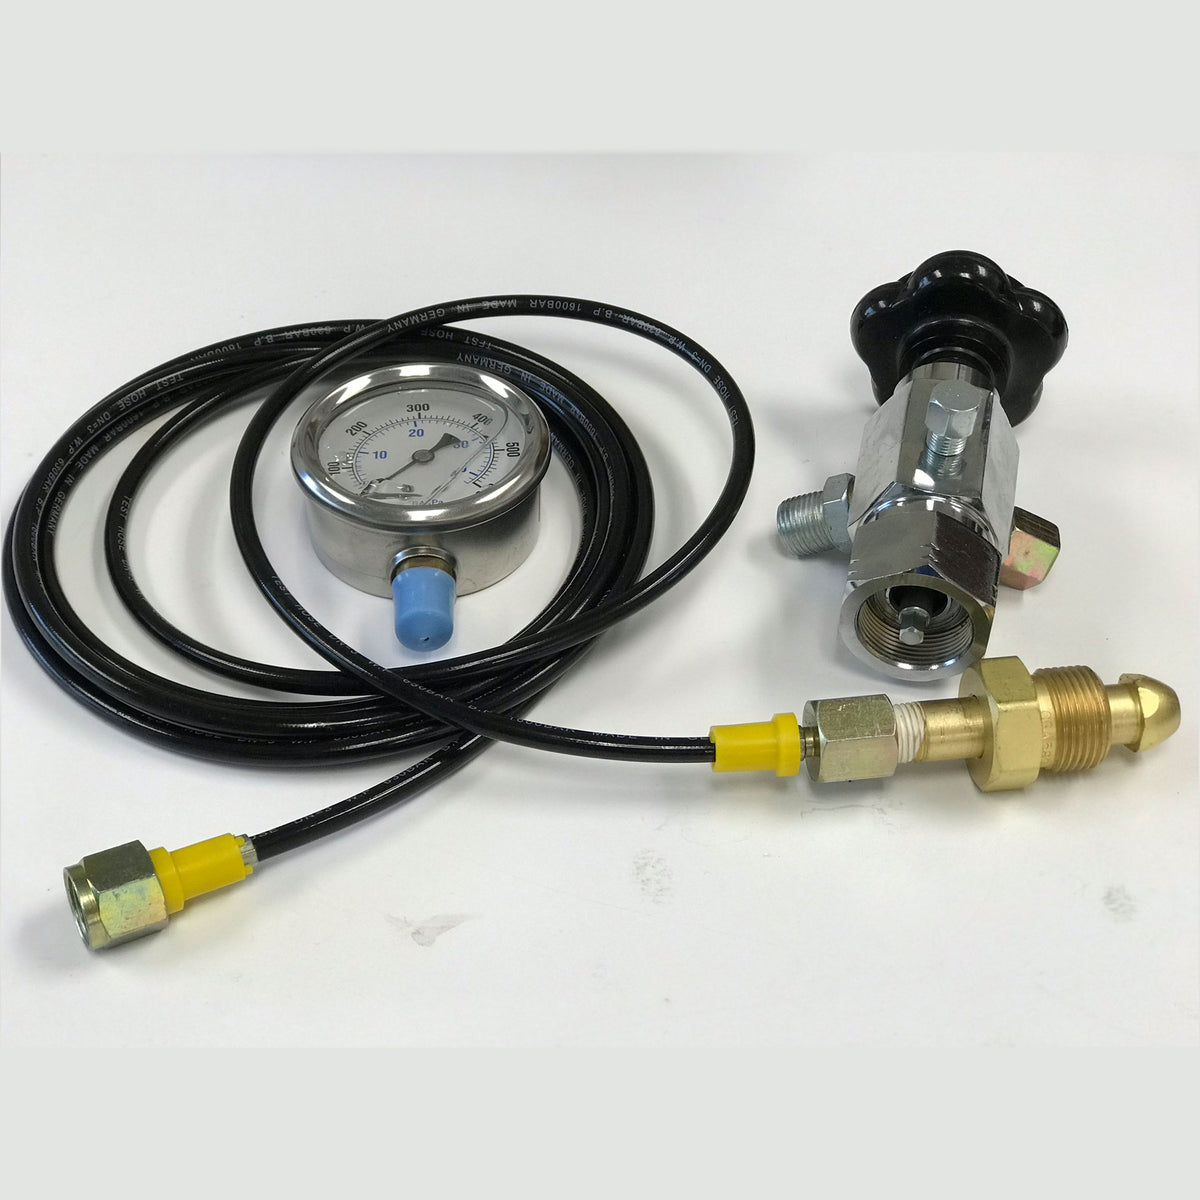 Hydraulic Nitrogen Accumulator Charging Kit Gas Charging System